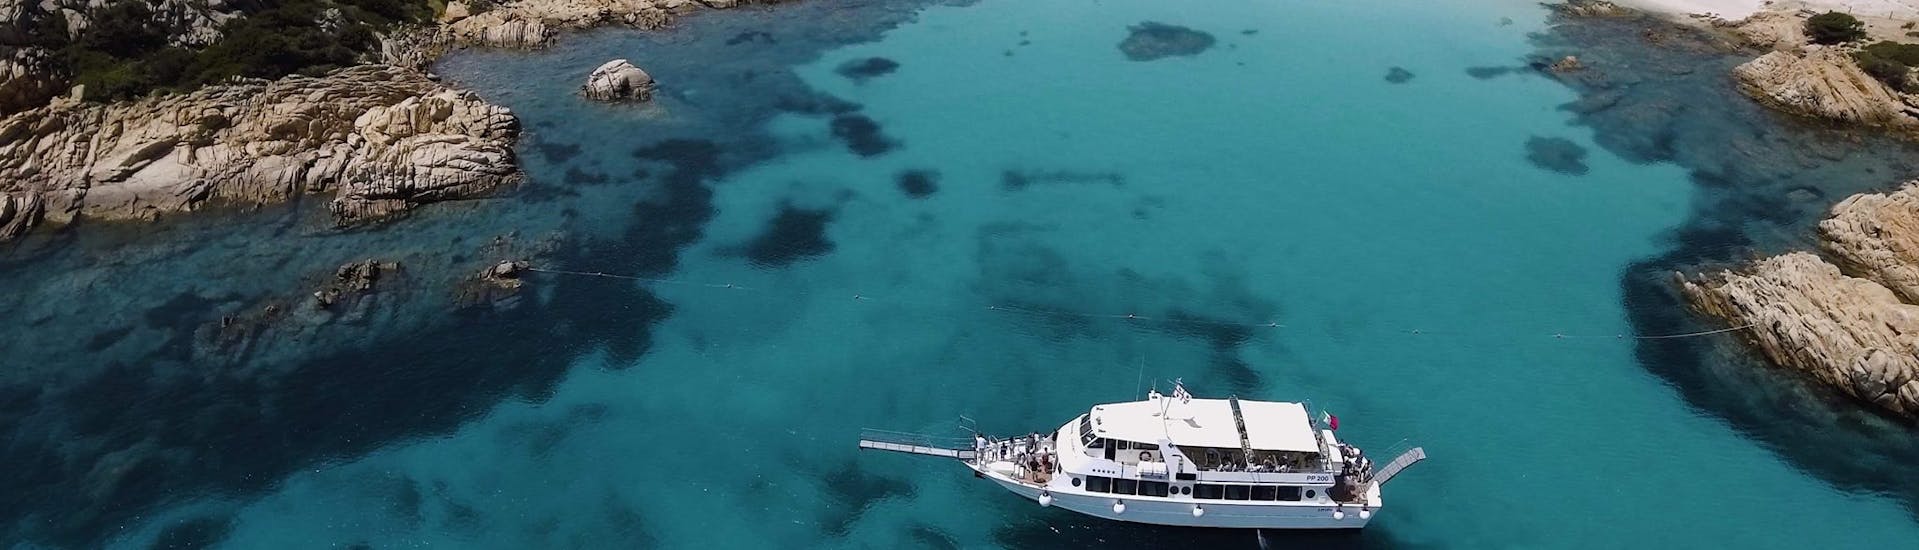 Un hermoso y espacioso barco navega por la bahía durante el Paseo por 4 islas al archipiélago de La Maddalena desde Palau.